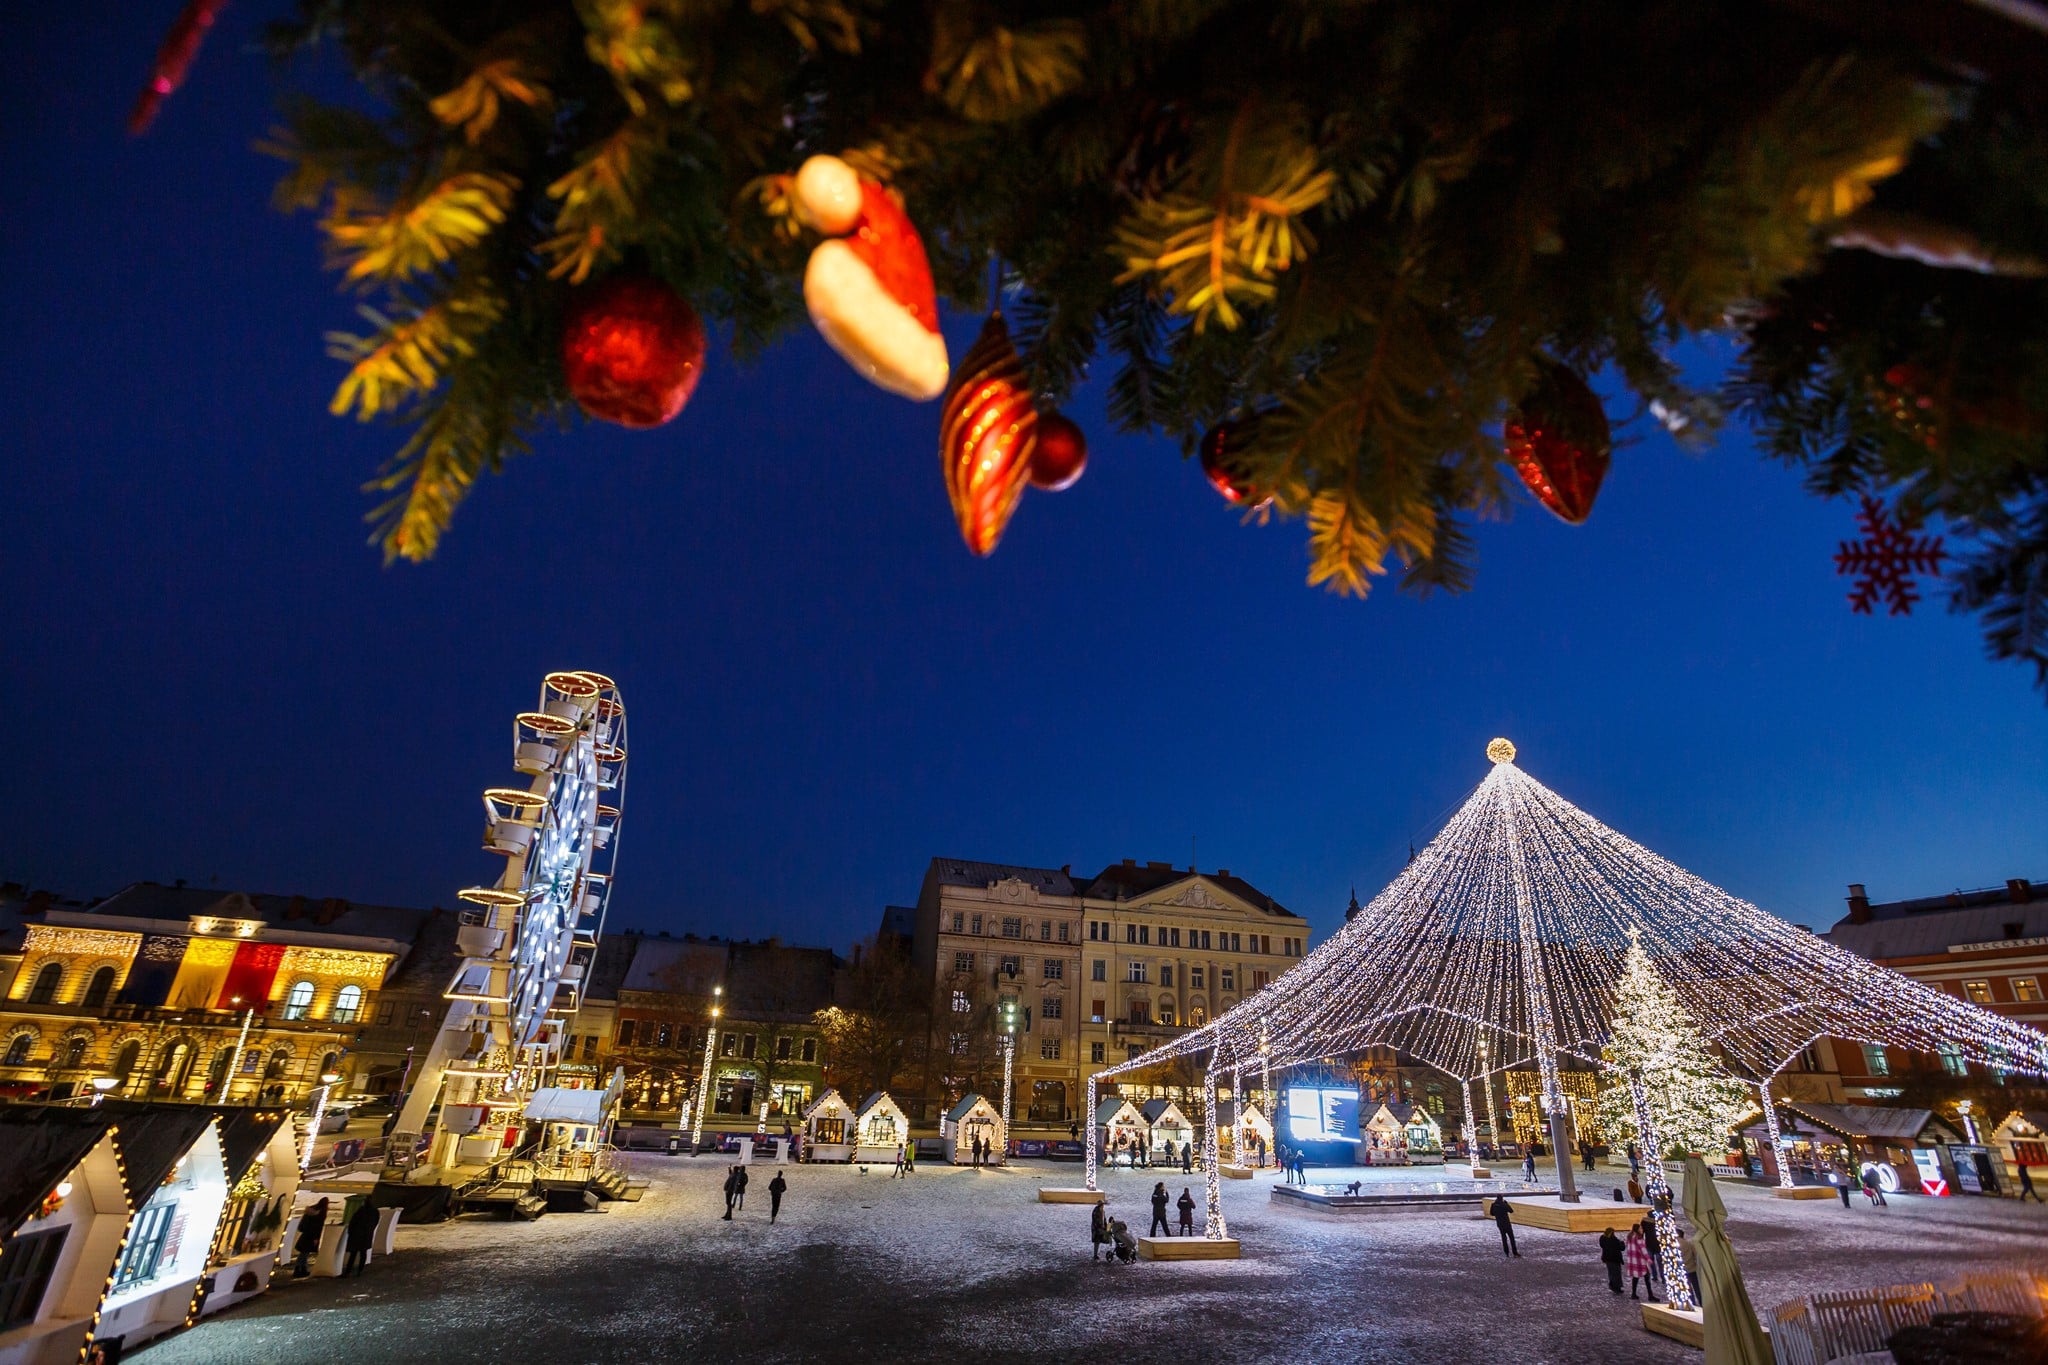 Au mai rămas doar câteva până când Târgul de Crăciun de la Cluj-Napoca își redeschide porțile. FOTO: Facebook/ Târgul de Crăciun Cluj-Napoca